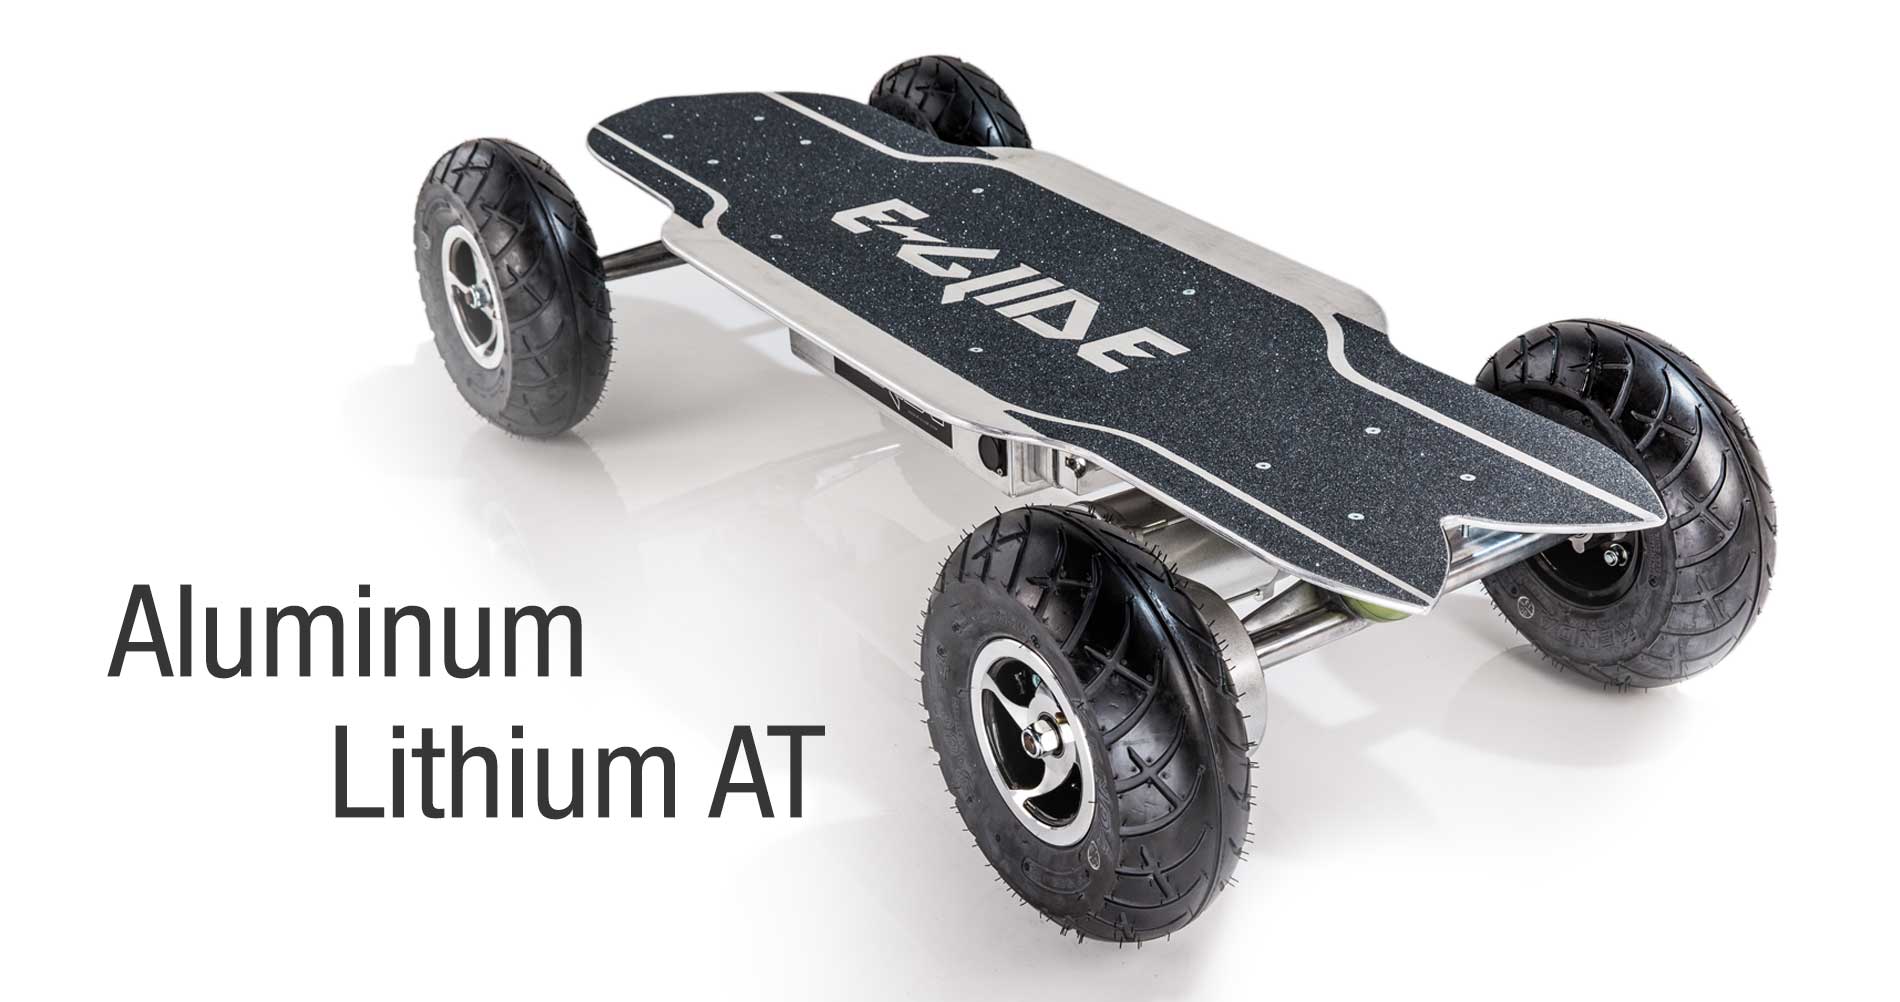 Aluminum Lithium AT